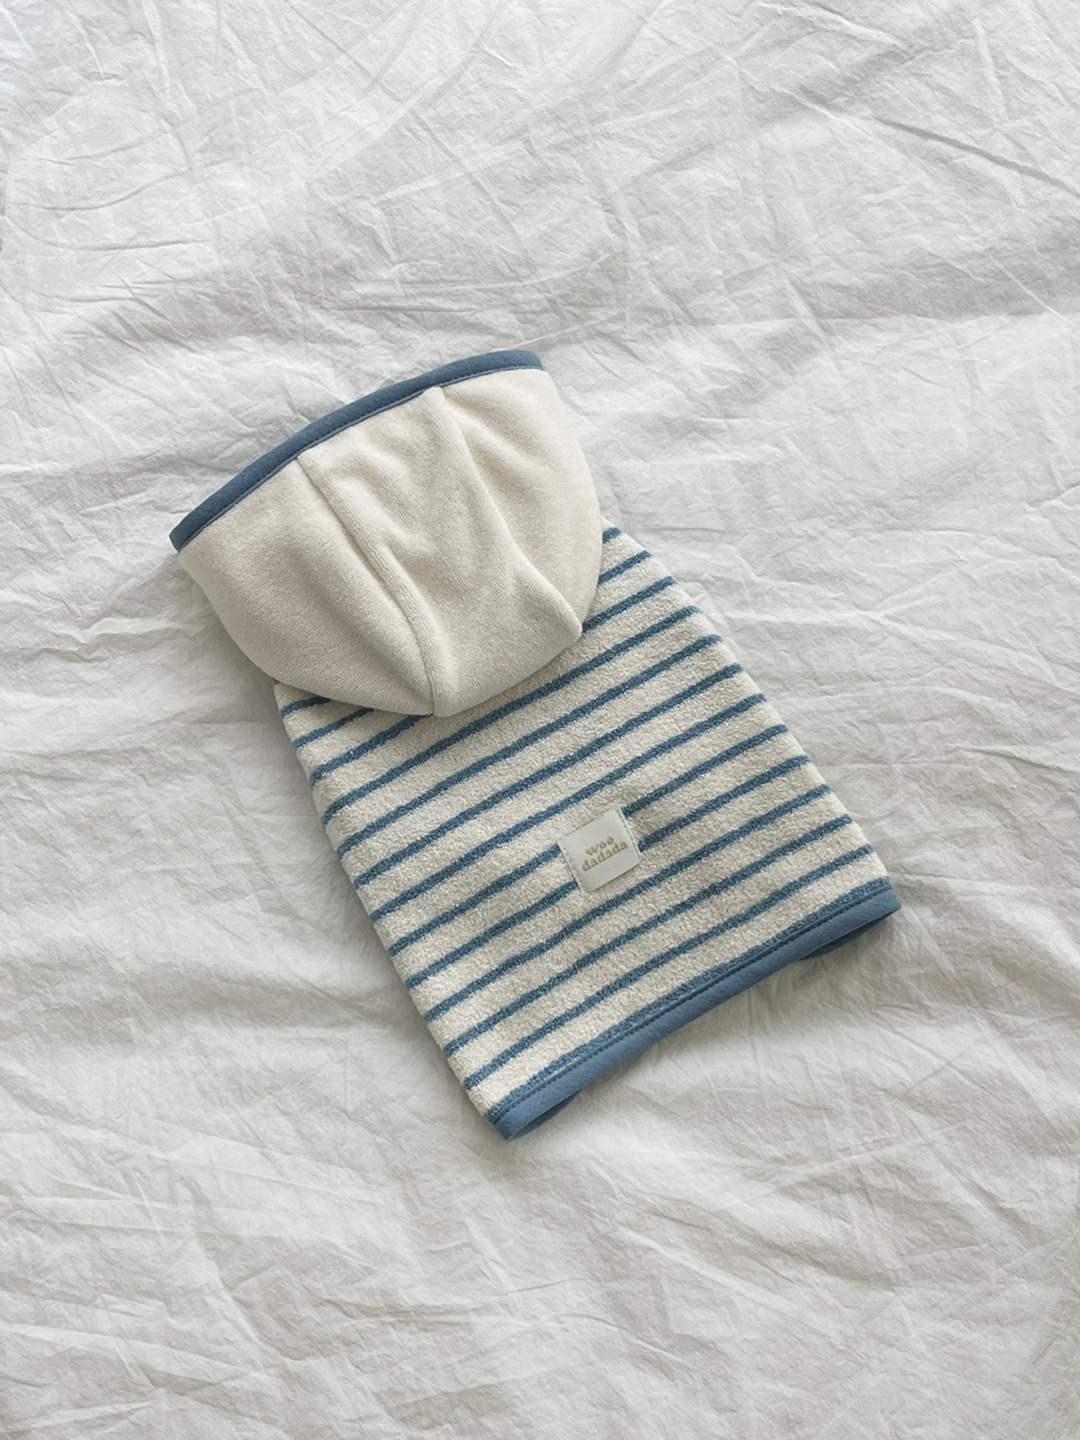 Pet bath towel gown 목욕가운(blue)